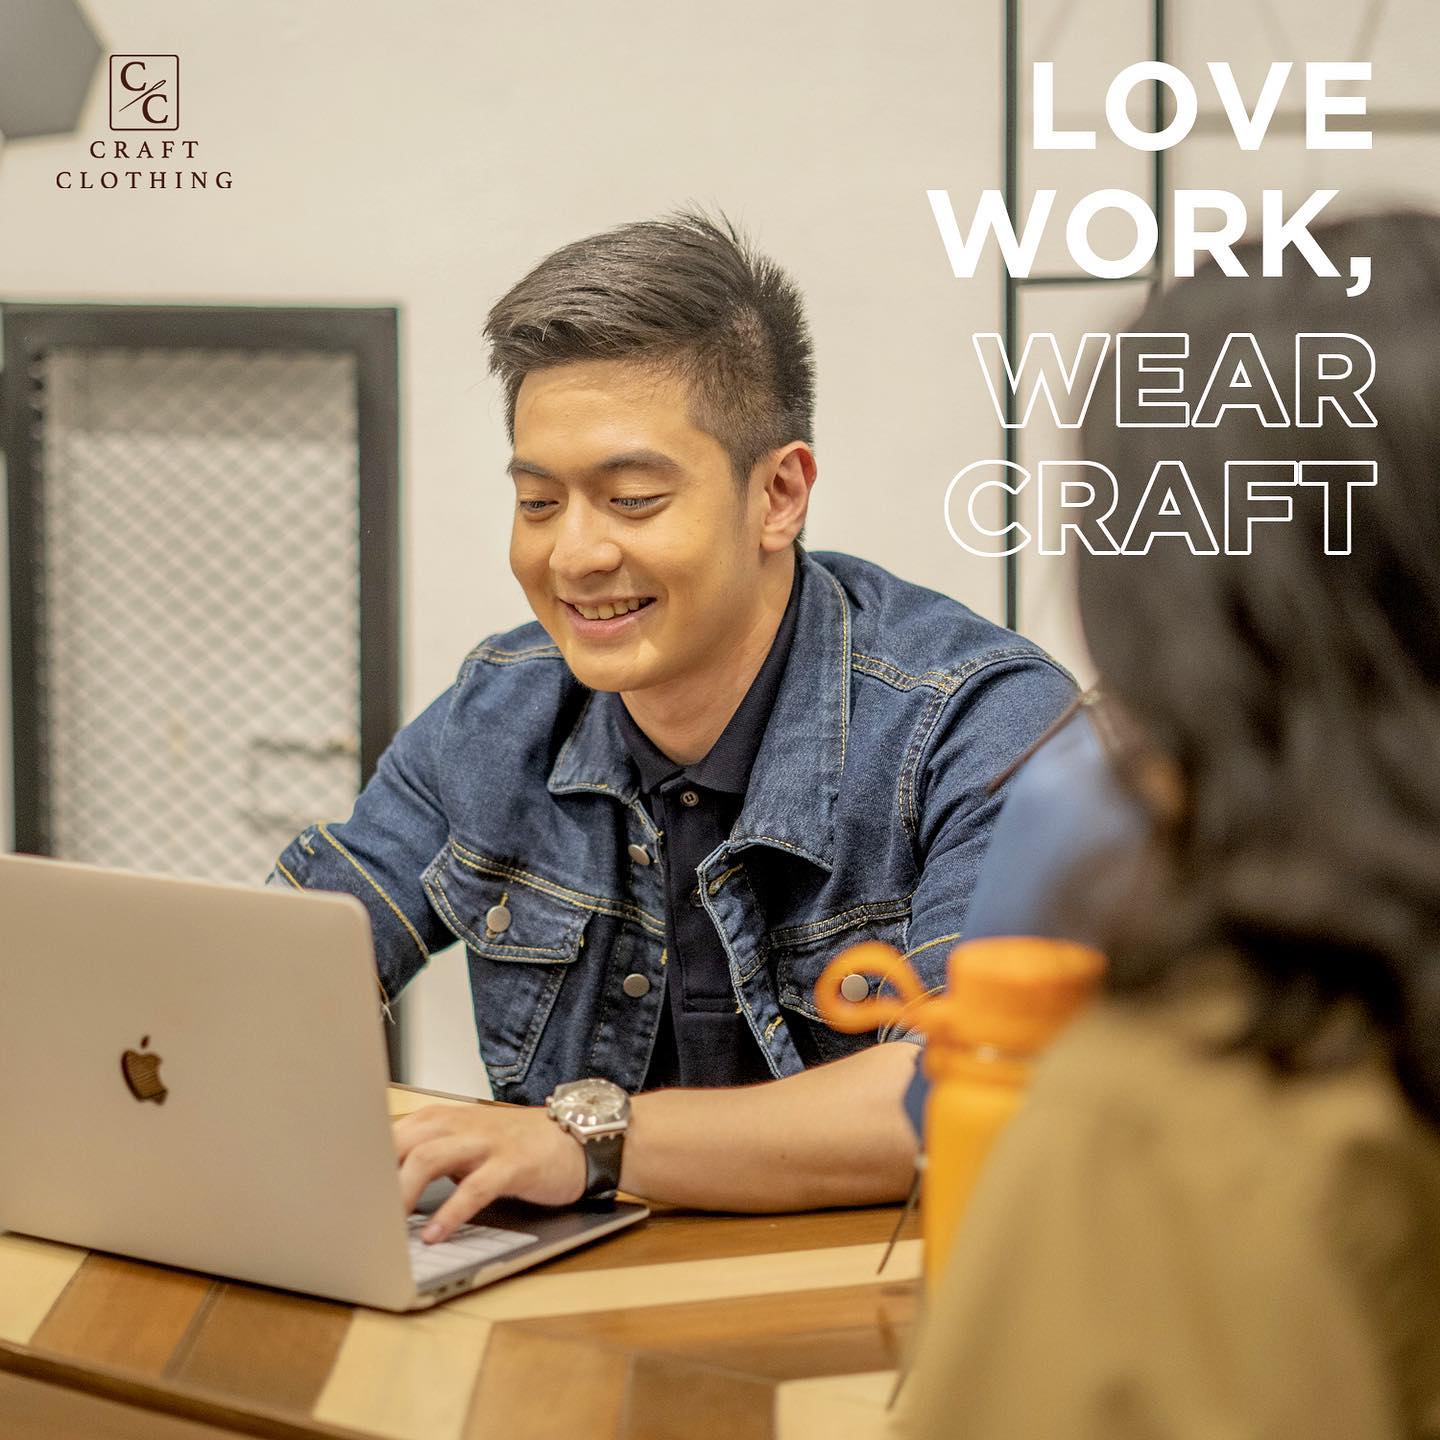 Love Work, Wear Craft.